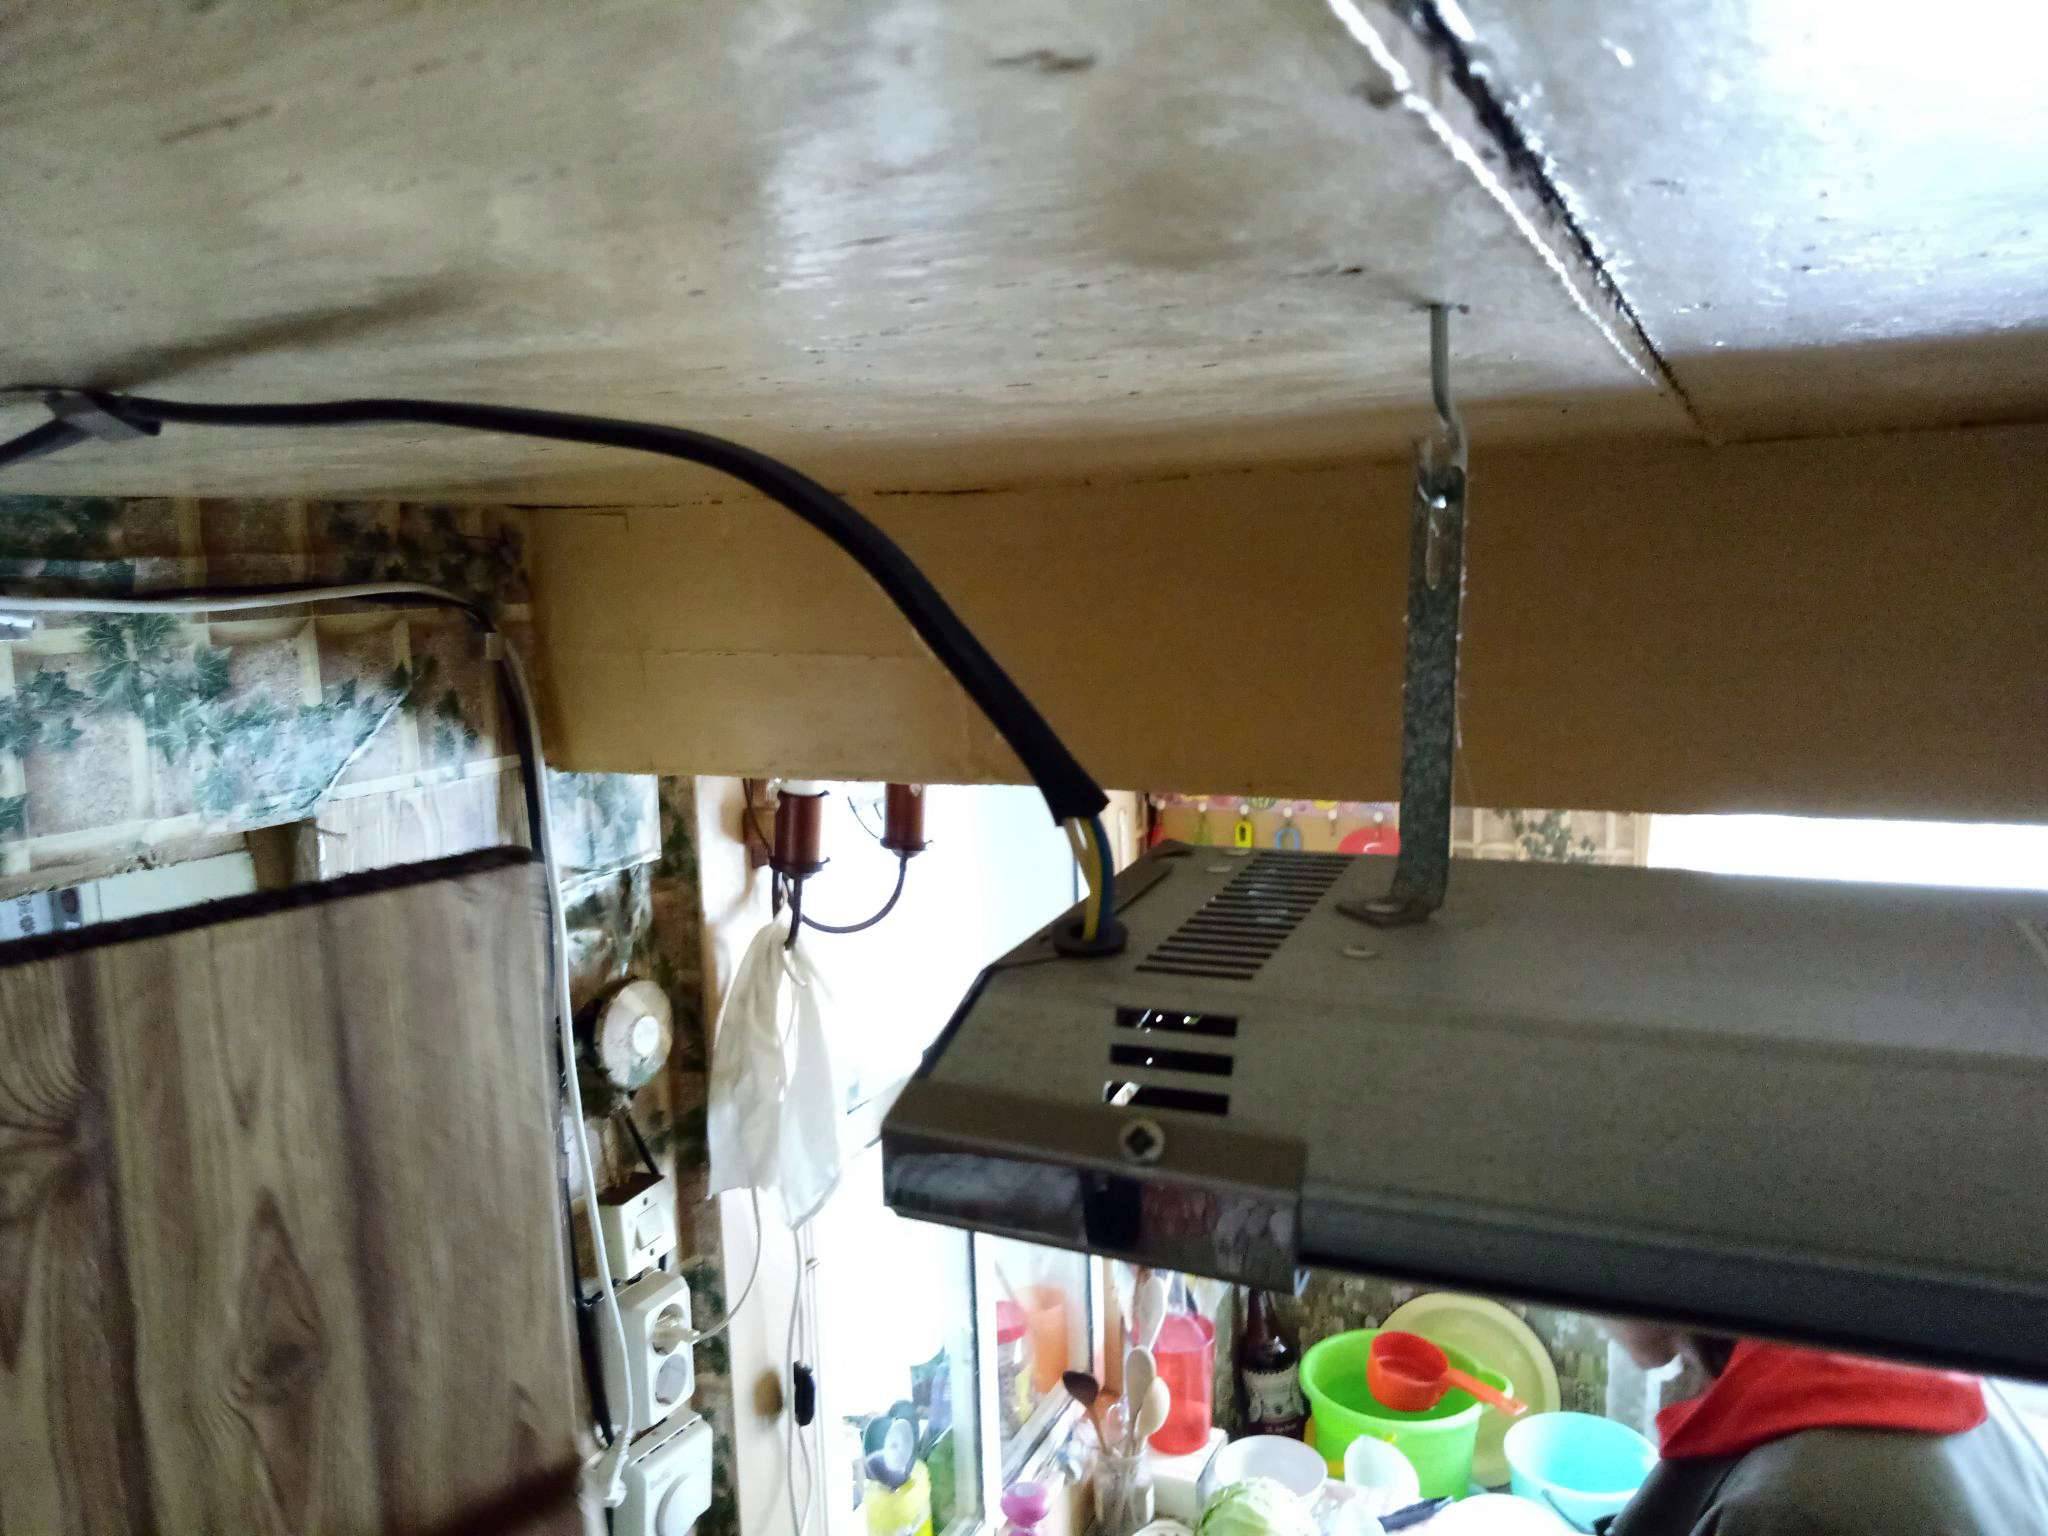 Виды, устройство и установка инфракрасного потолочного обогревателя